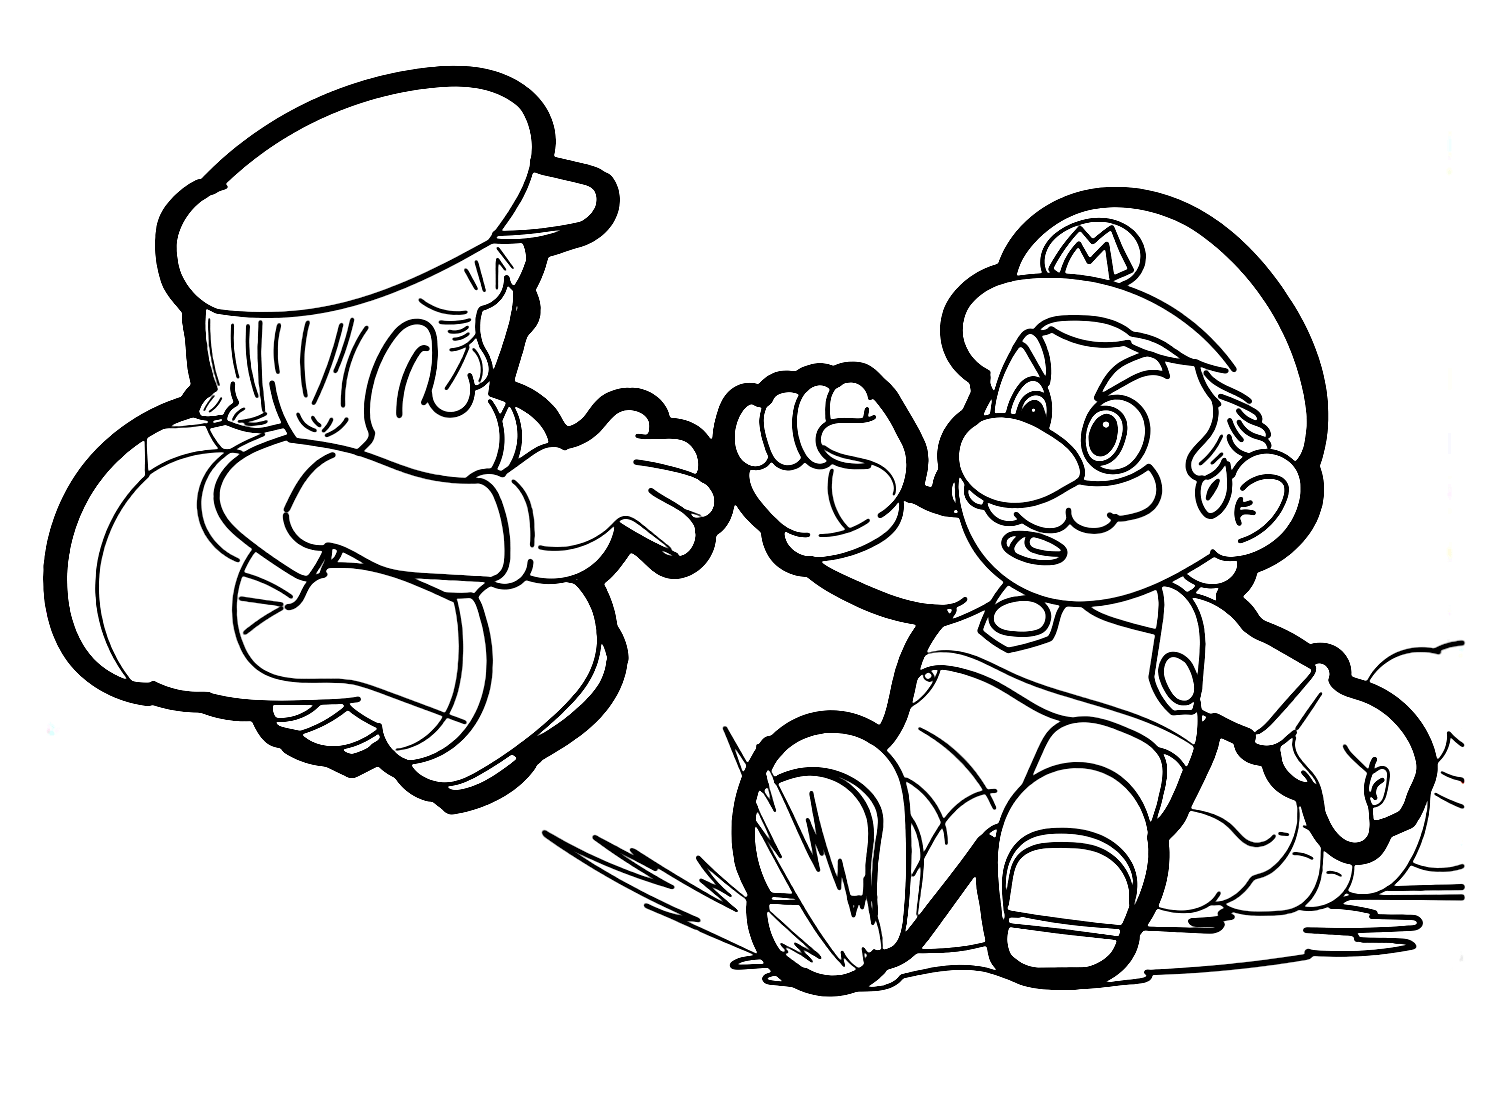 Mario und Luigi aus Super Mario Odyssey aus Super Mario Odyssey